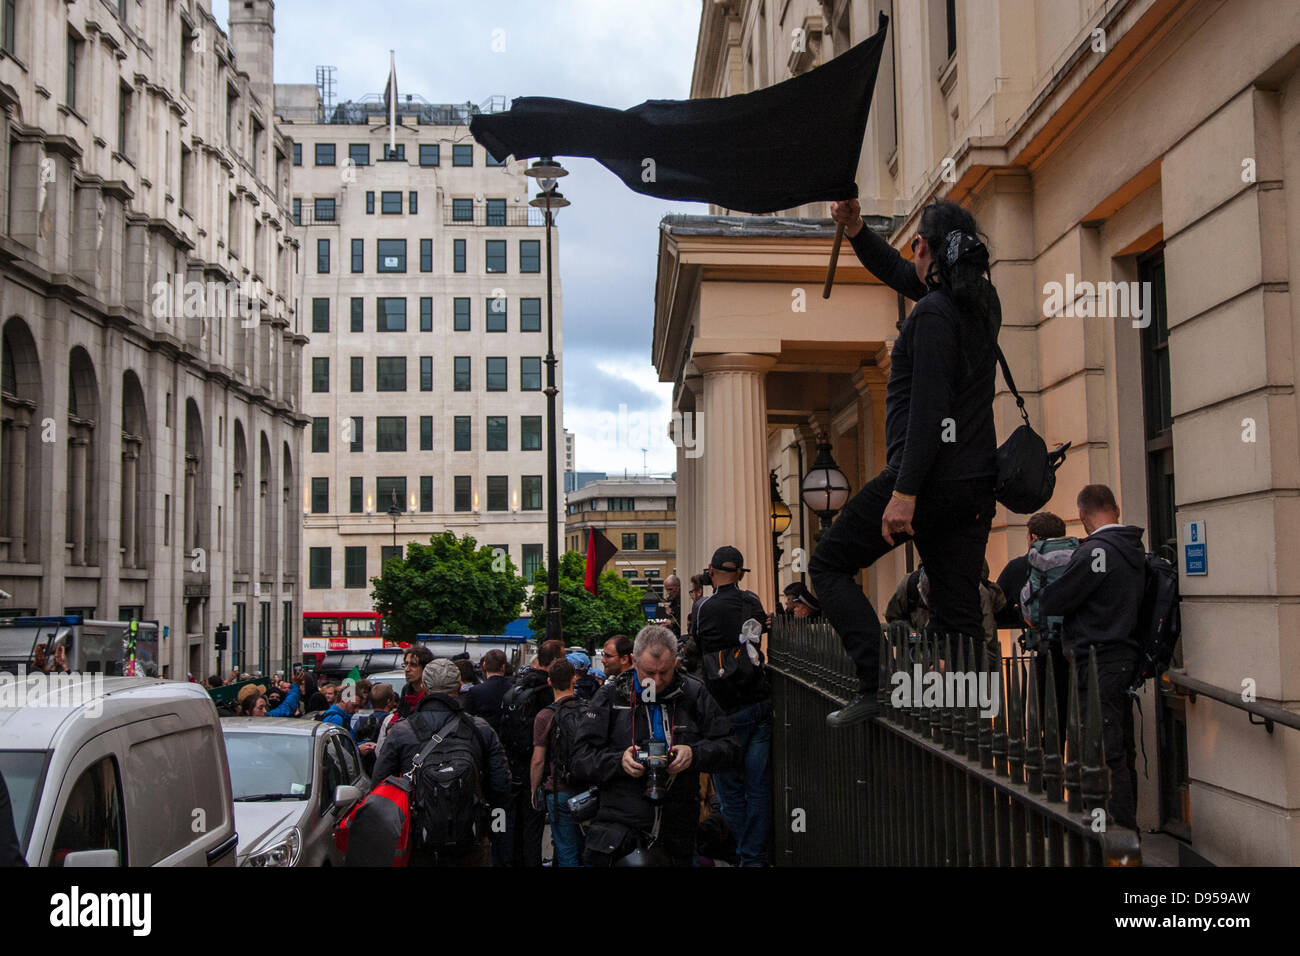 Londres, Royaume-Uni. 11 Juin, 2013. Un anarchiste vagues son drapeau tandis que, debout sur le parapet en dehors de Charing Cross station de police où plusieurs manifestants arrêtés lors des manifestations contre le sommet du G8. Crédit : Paul Davey/Alamy Live News Banque D'Images